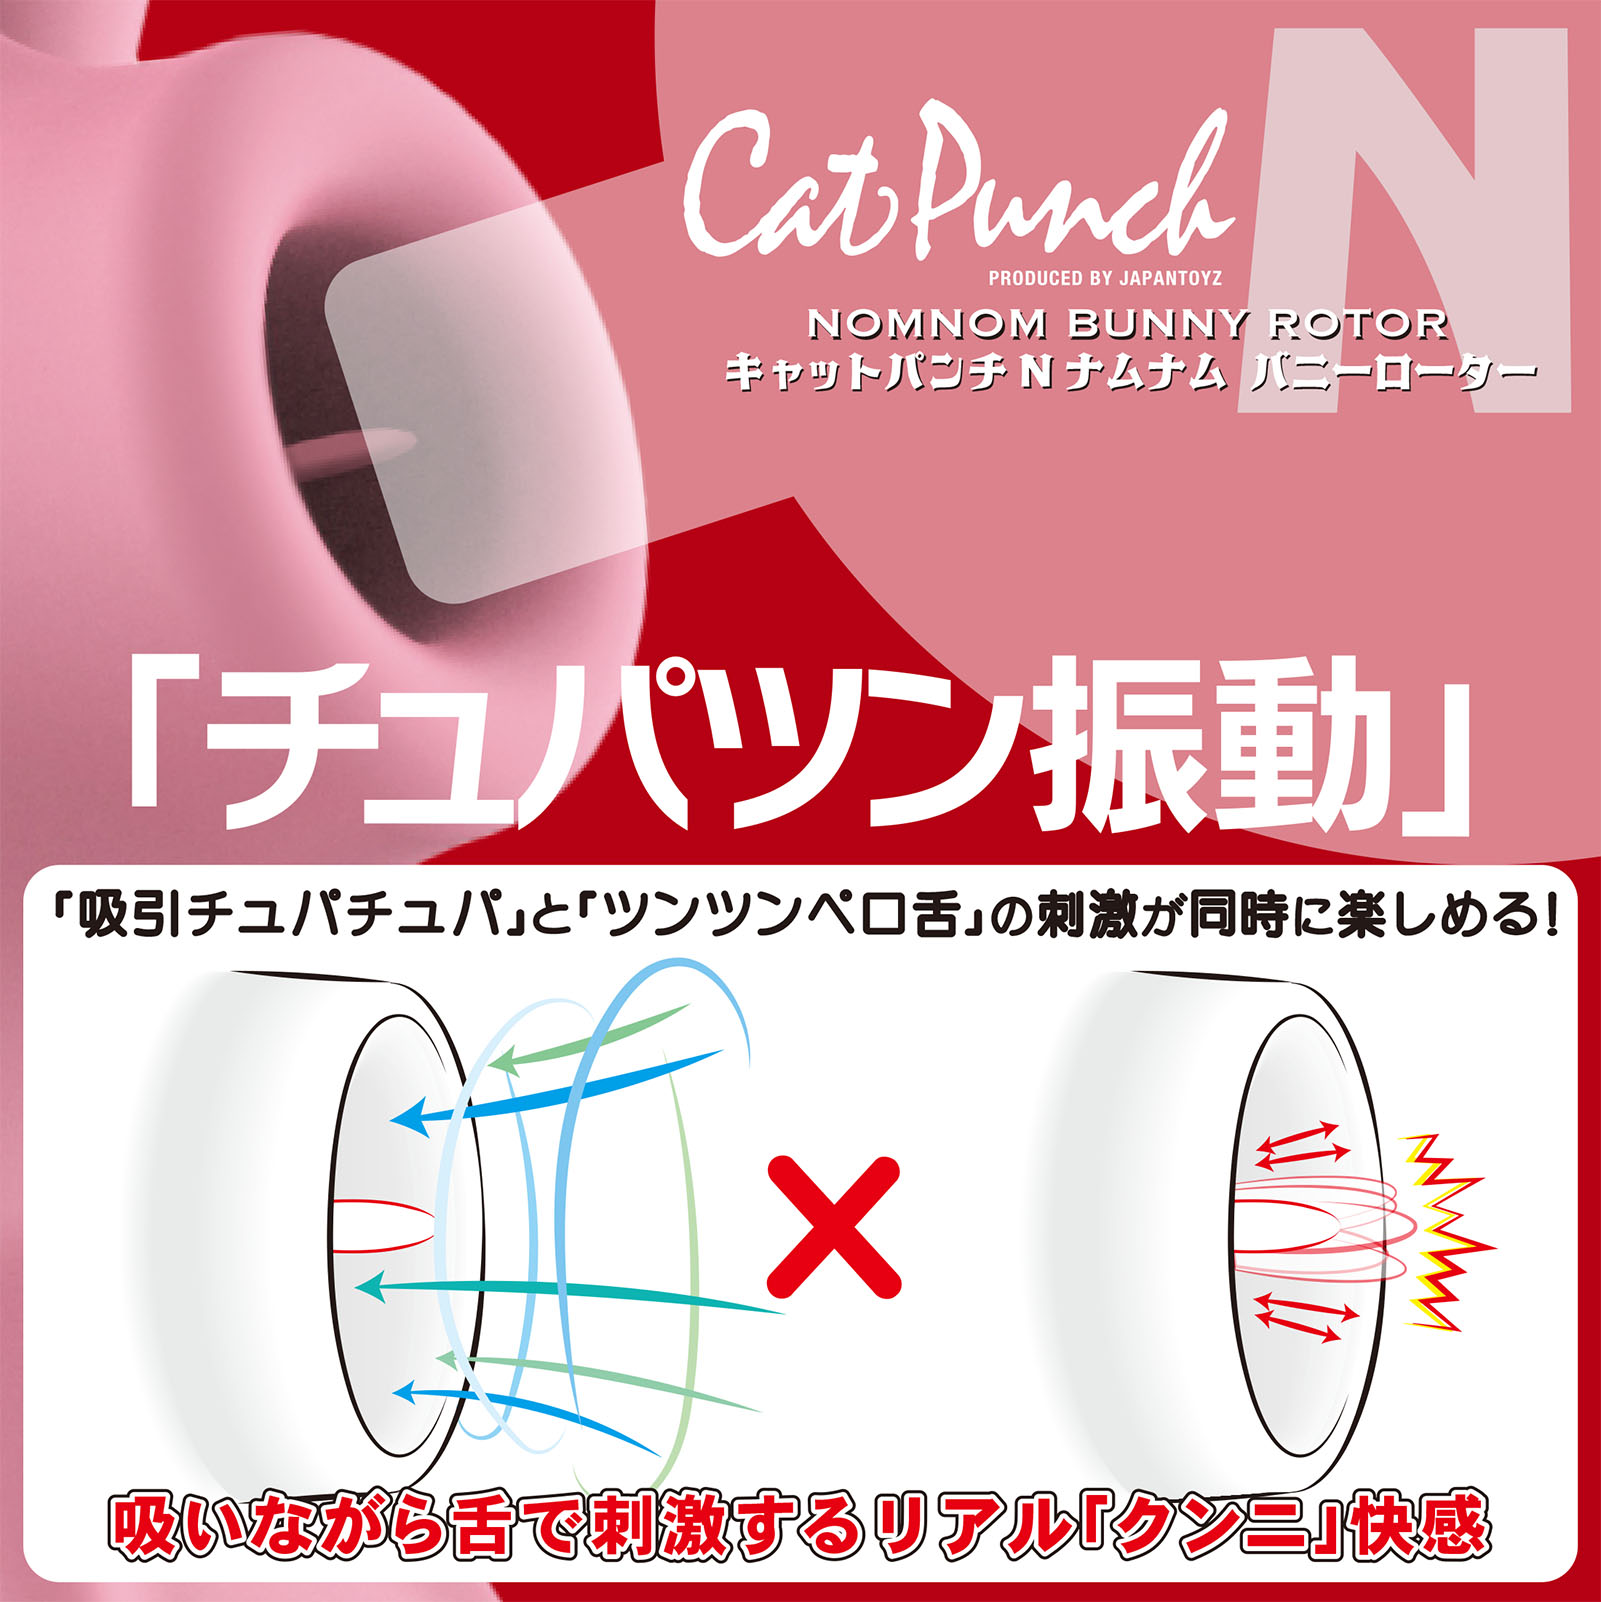 Cat Punch Lbgp` N ii oj[ [^[02